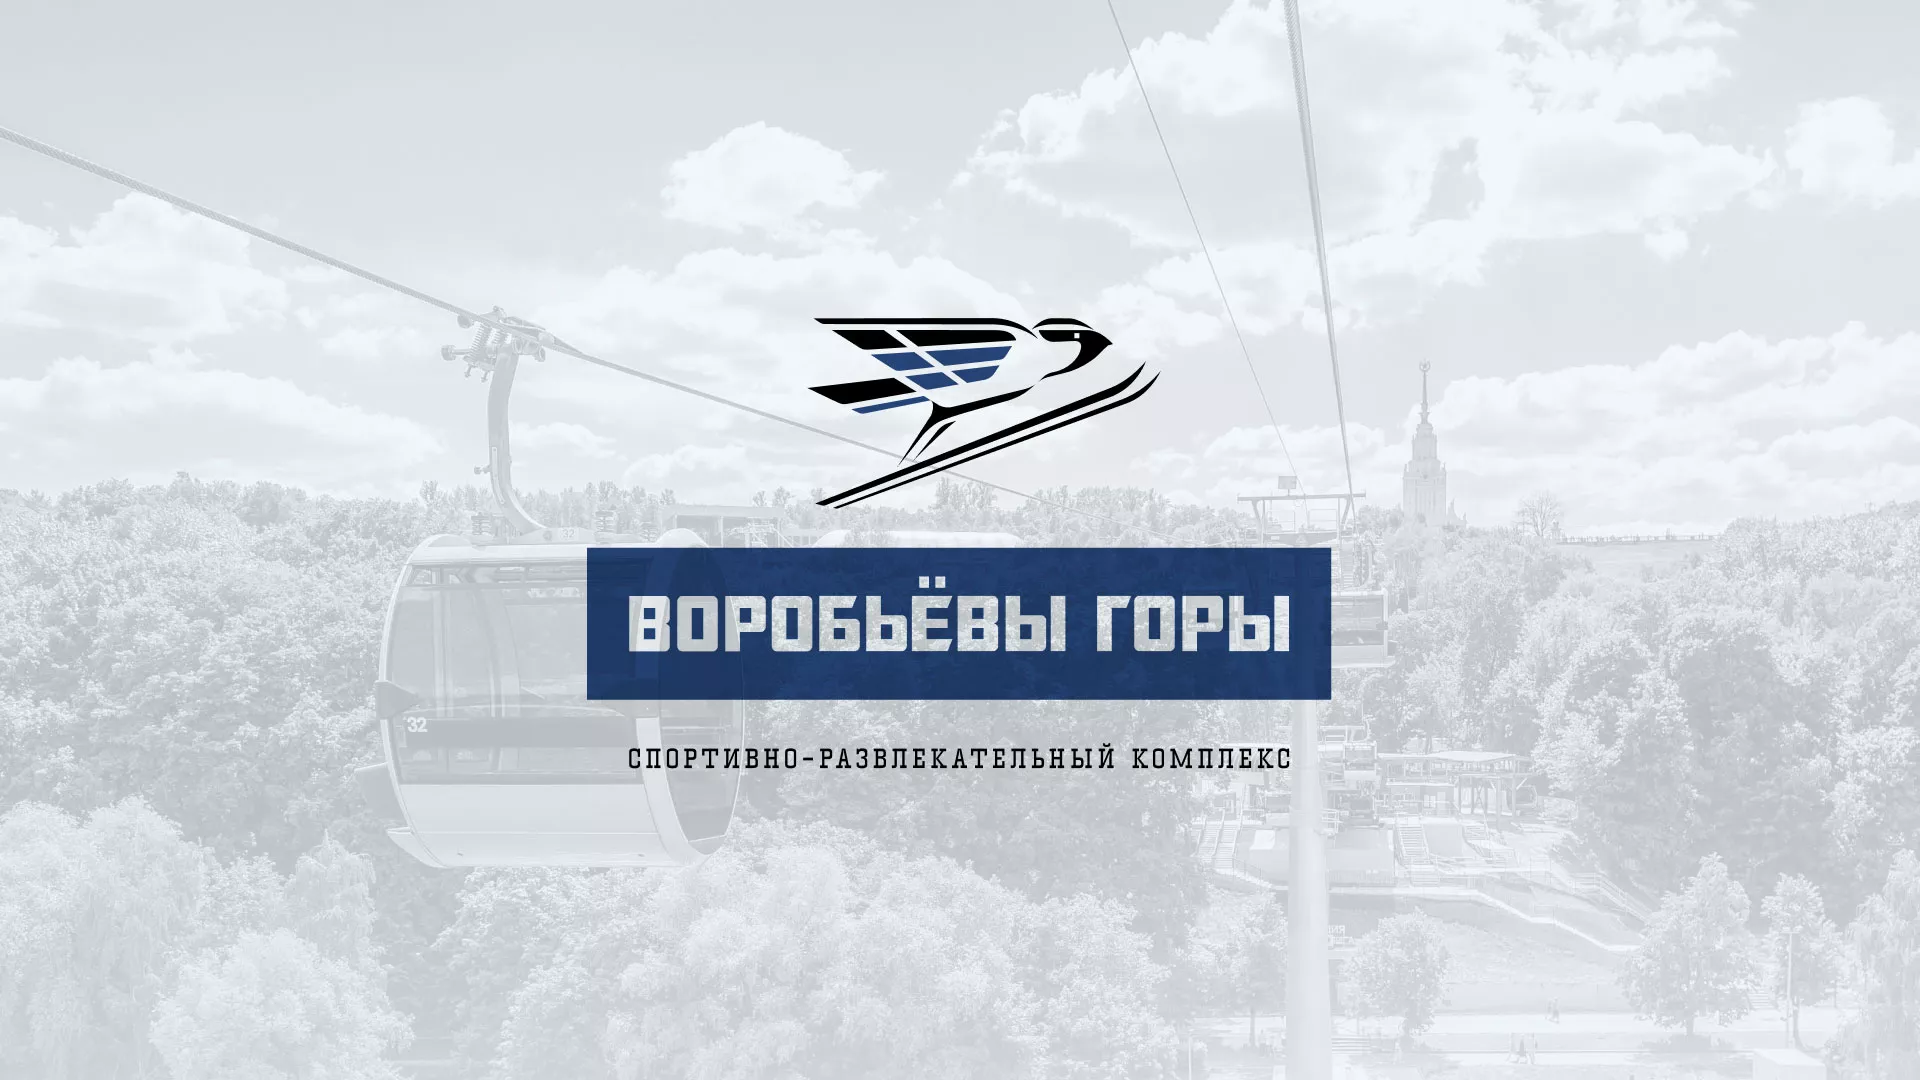 Разработка сайта в Правдинске для спортивно-развлекательного комплекса «Воробьёвы горы»